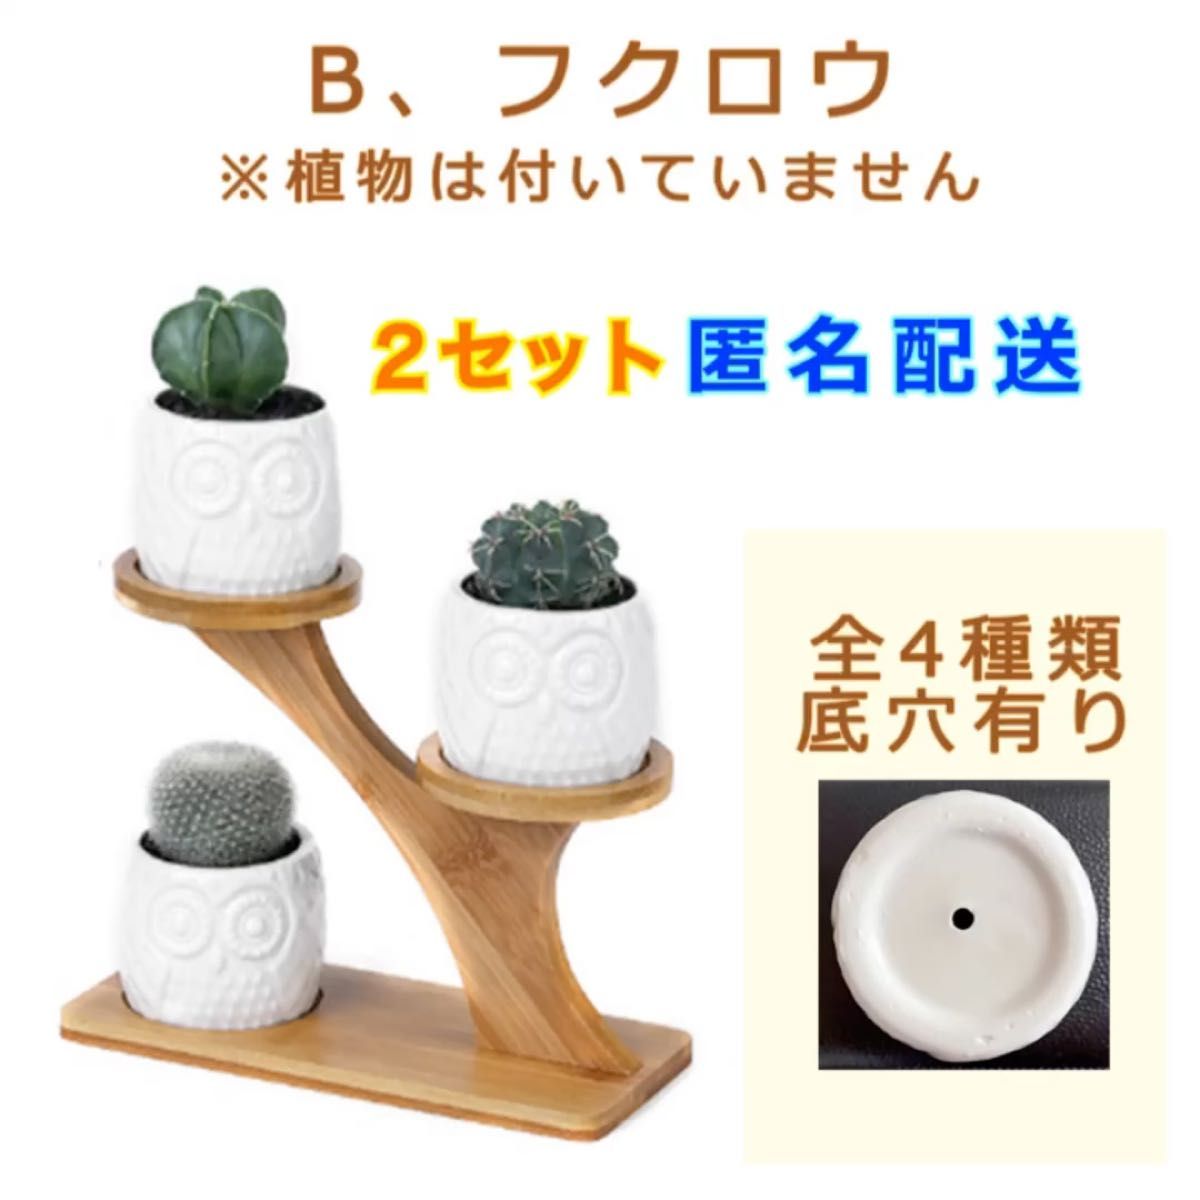 B-フクロウ型 ２セット 陶器鉢 新品 竹製スタンドホルダー付き 鉢+スタンドセット 植木鉢 フクロウ型 底穴有り 陶器